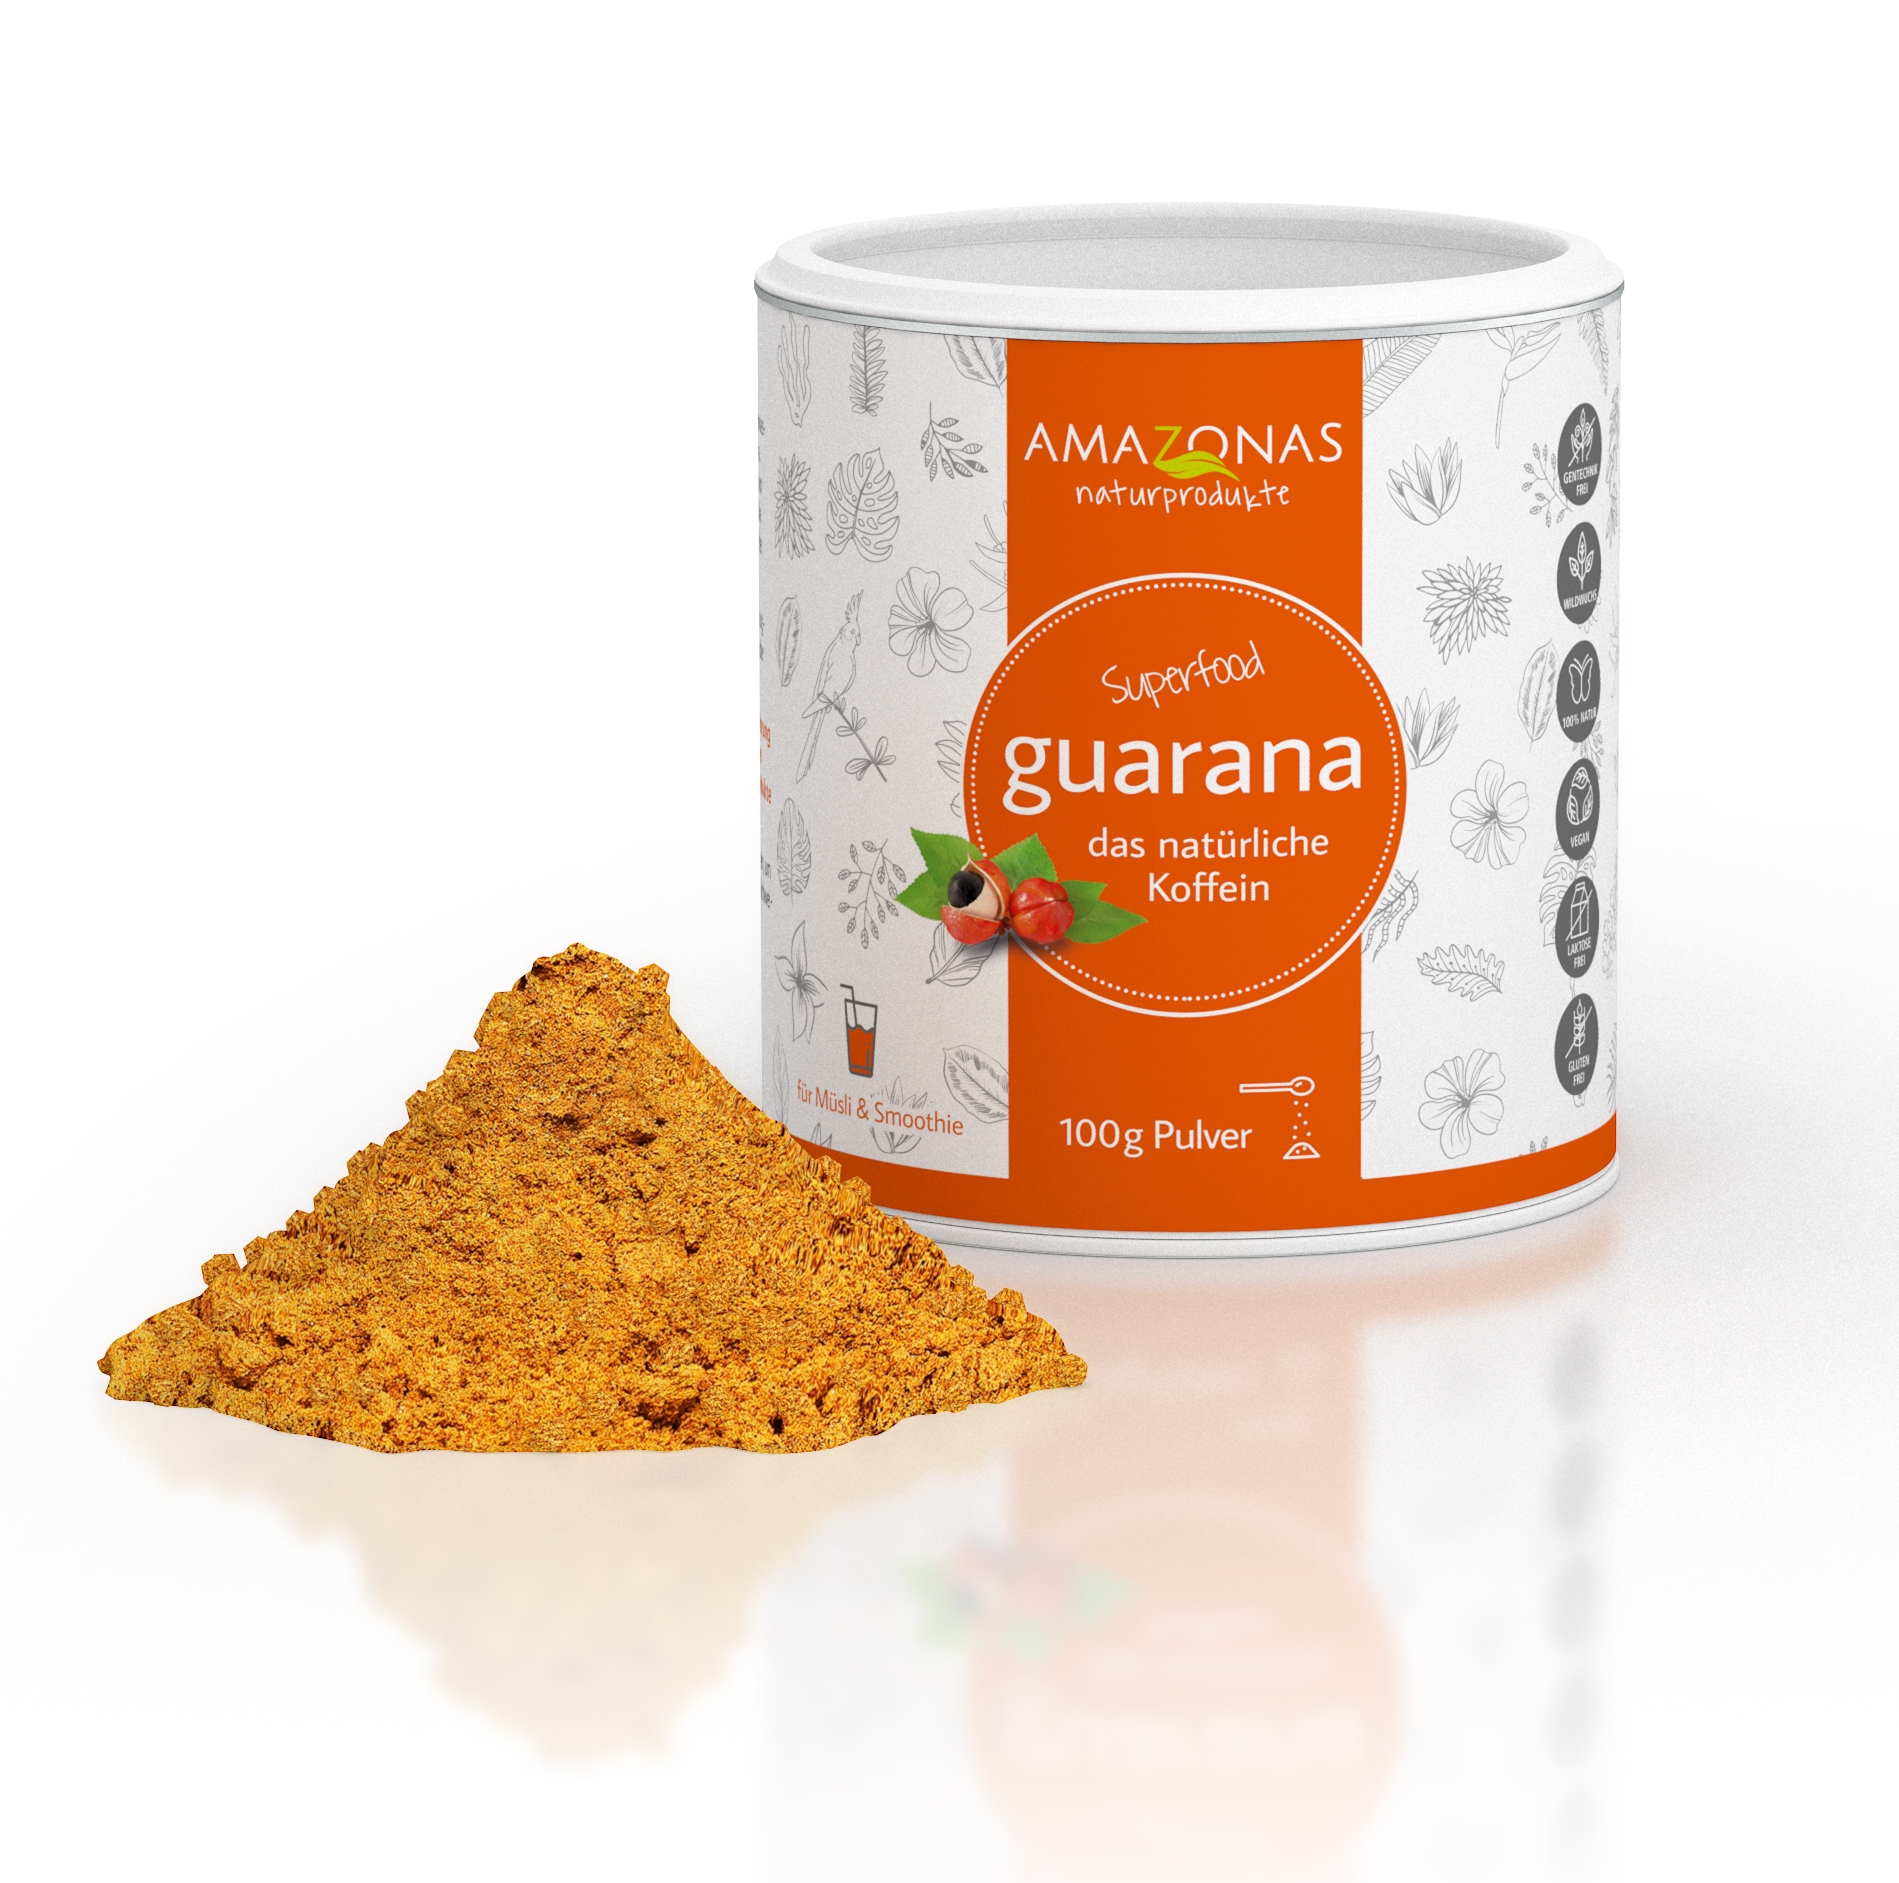 Guarana Pulver, 100g, das Original aus dem Amazonas, 100% natürliches Koffein